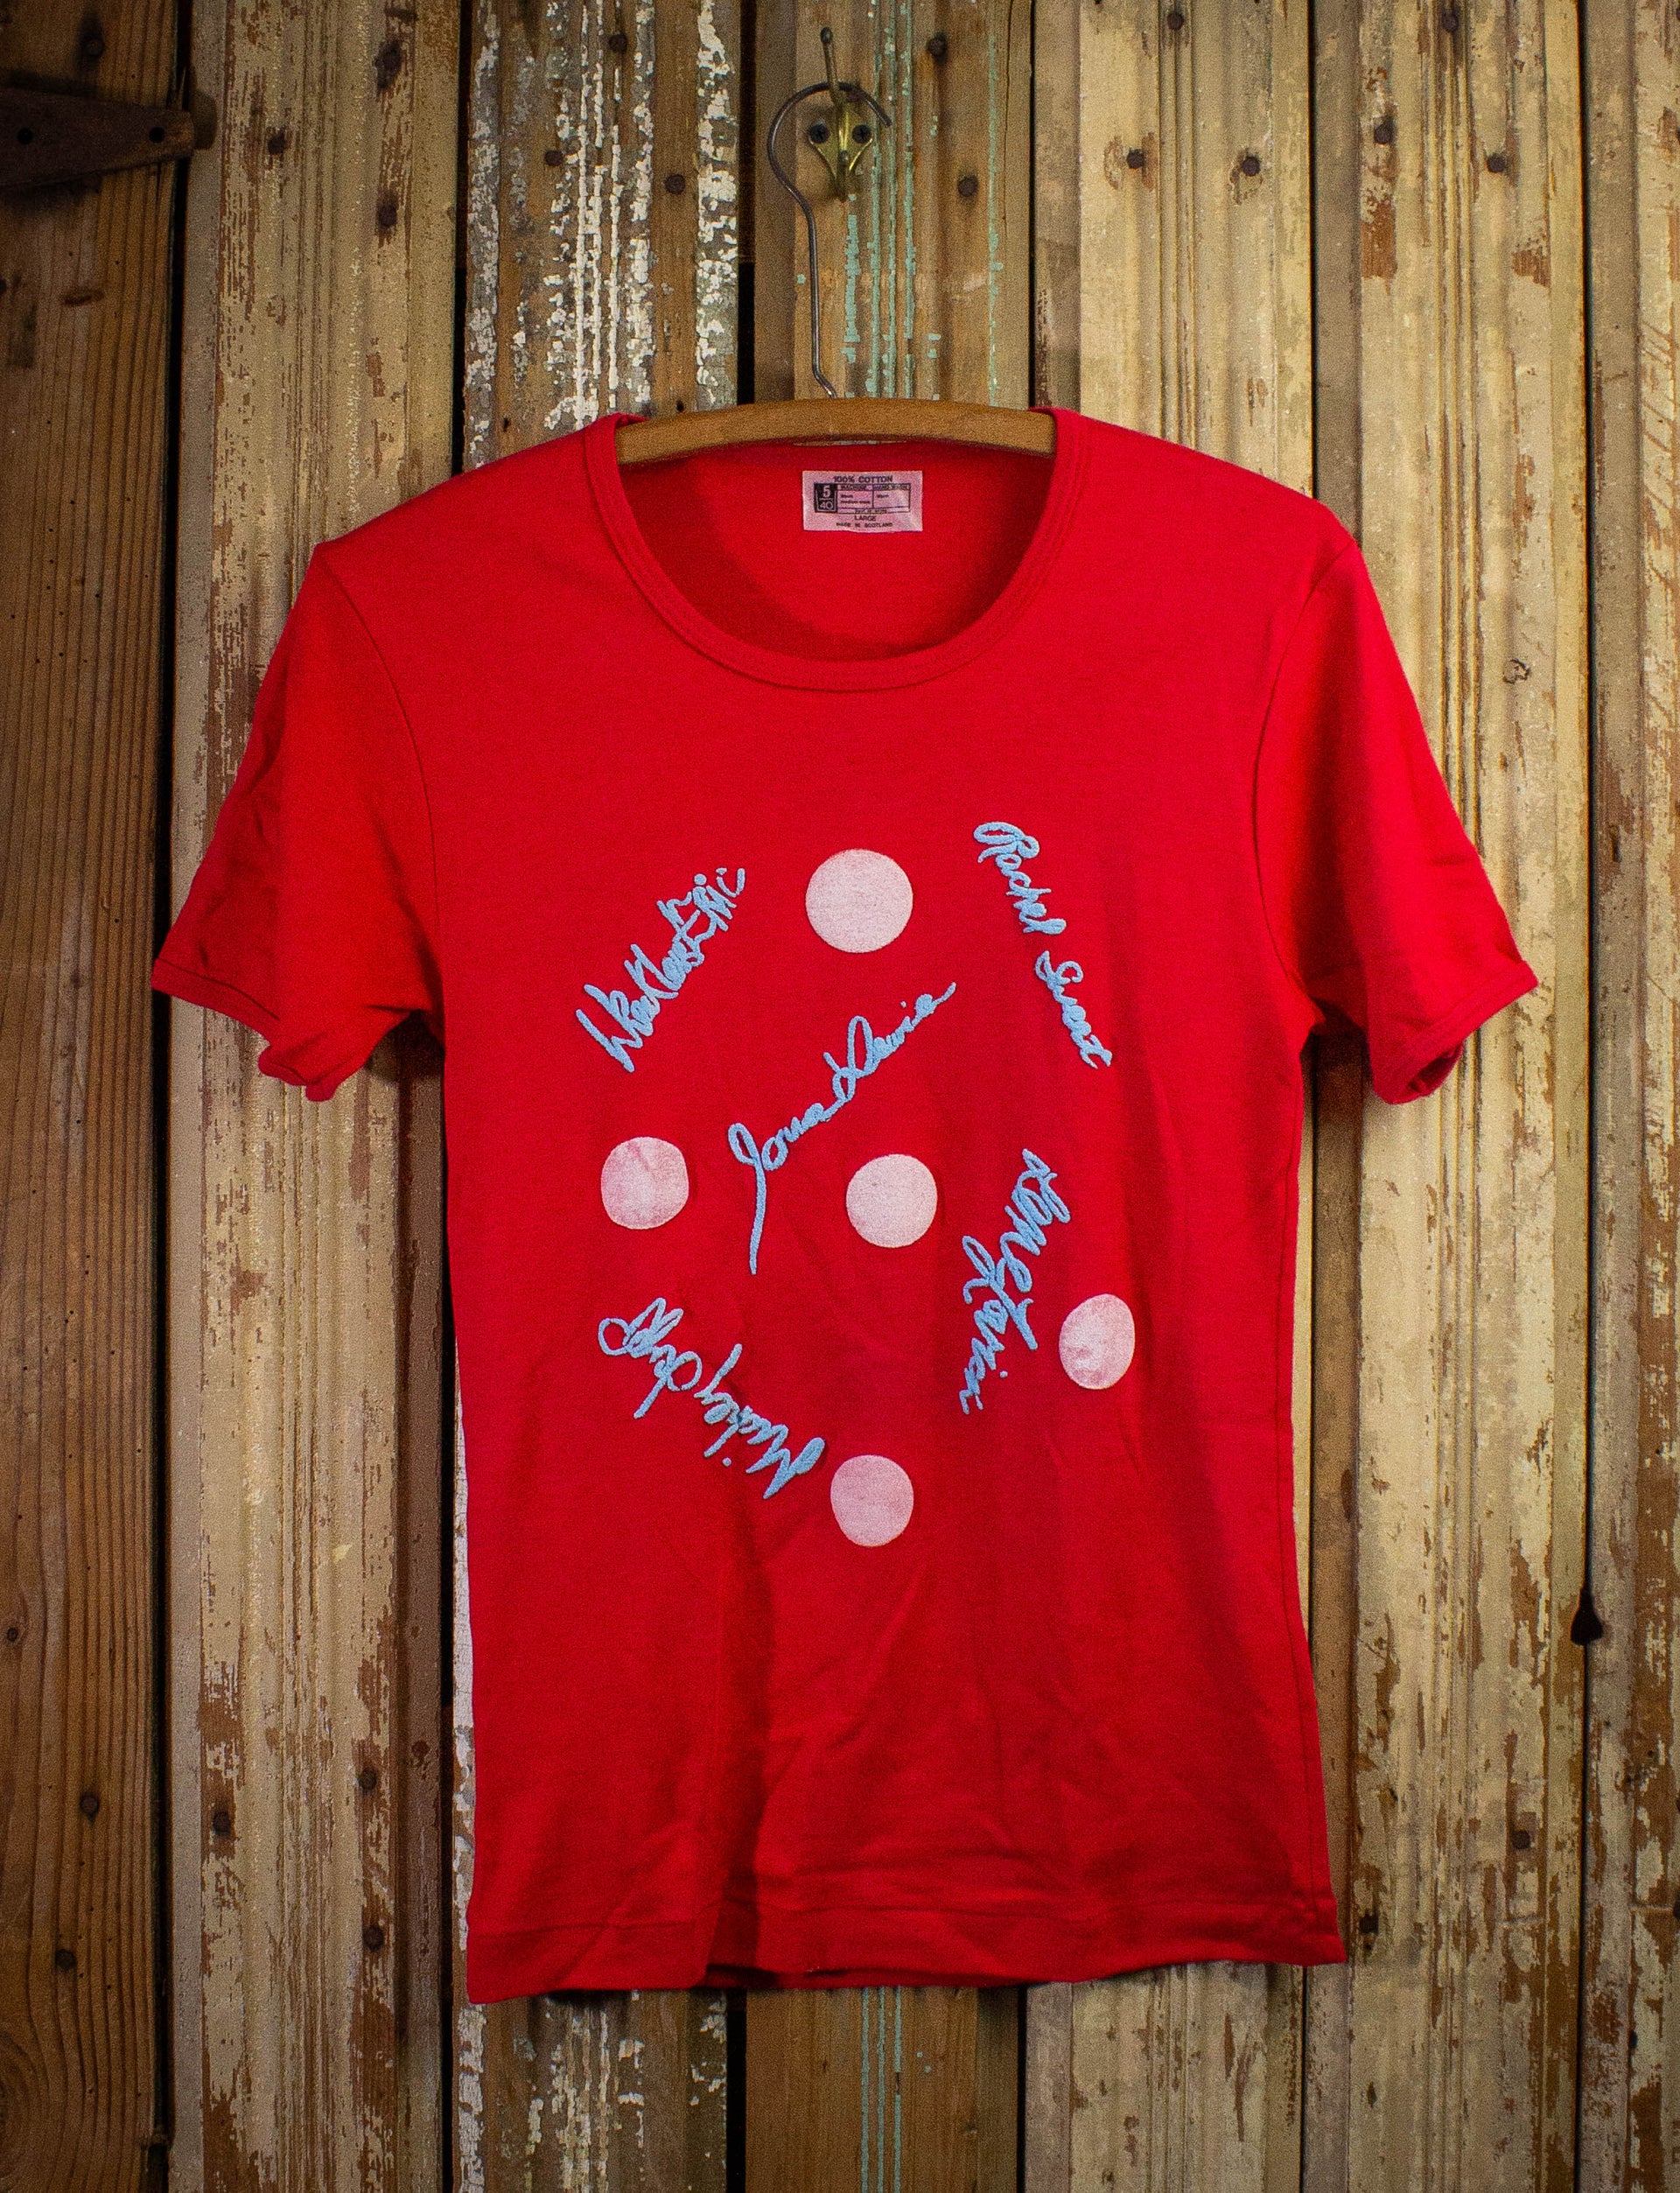 T Tour Stiff Shirt 1978 XS Shag Be – Black Concert Red Vintage Vintage